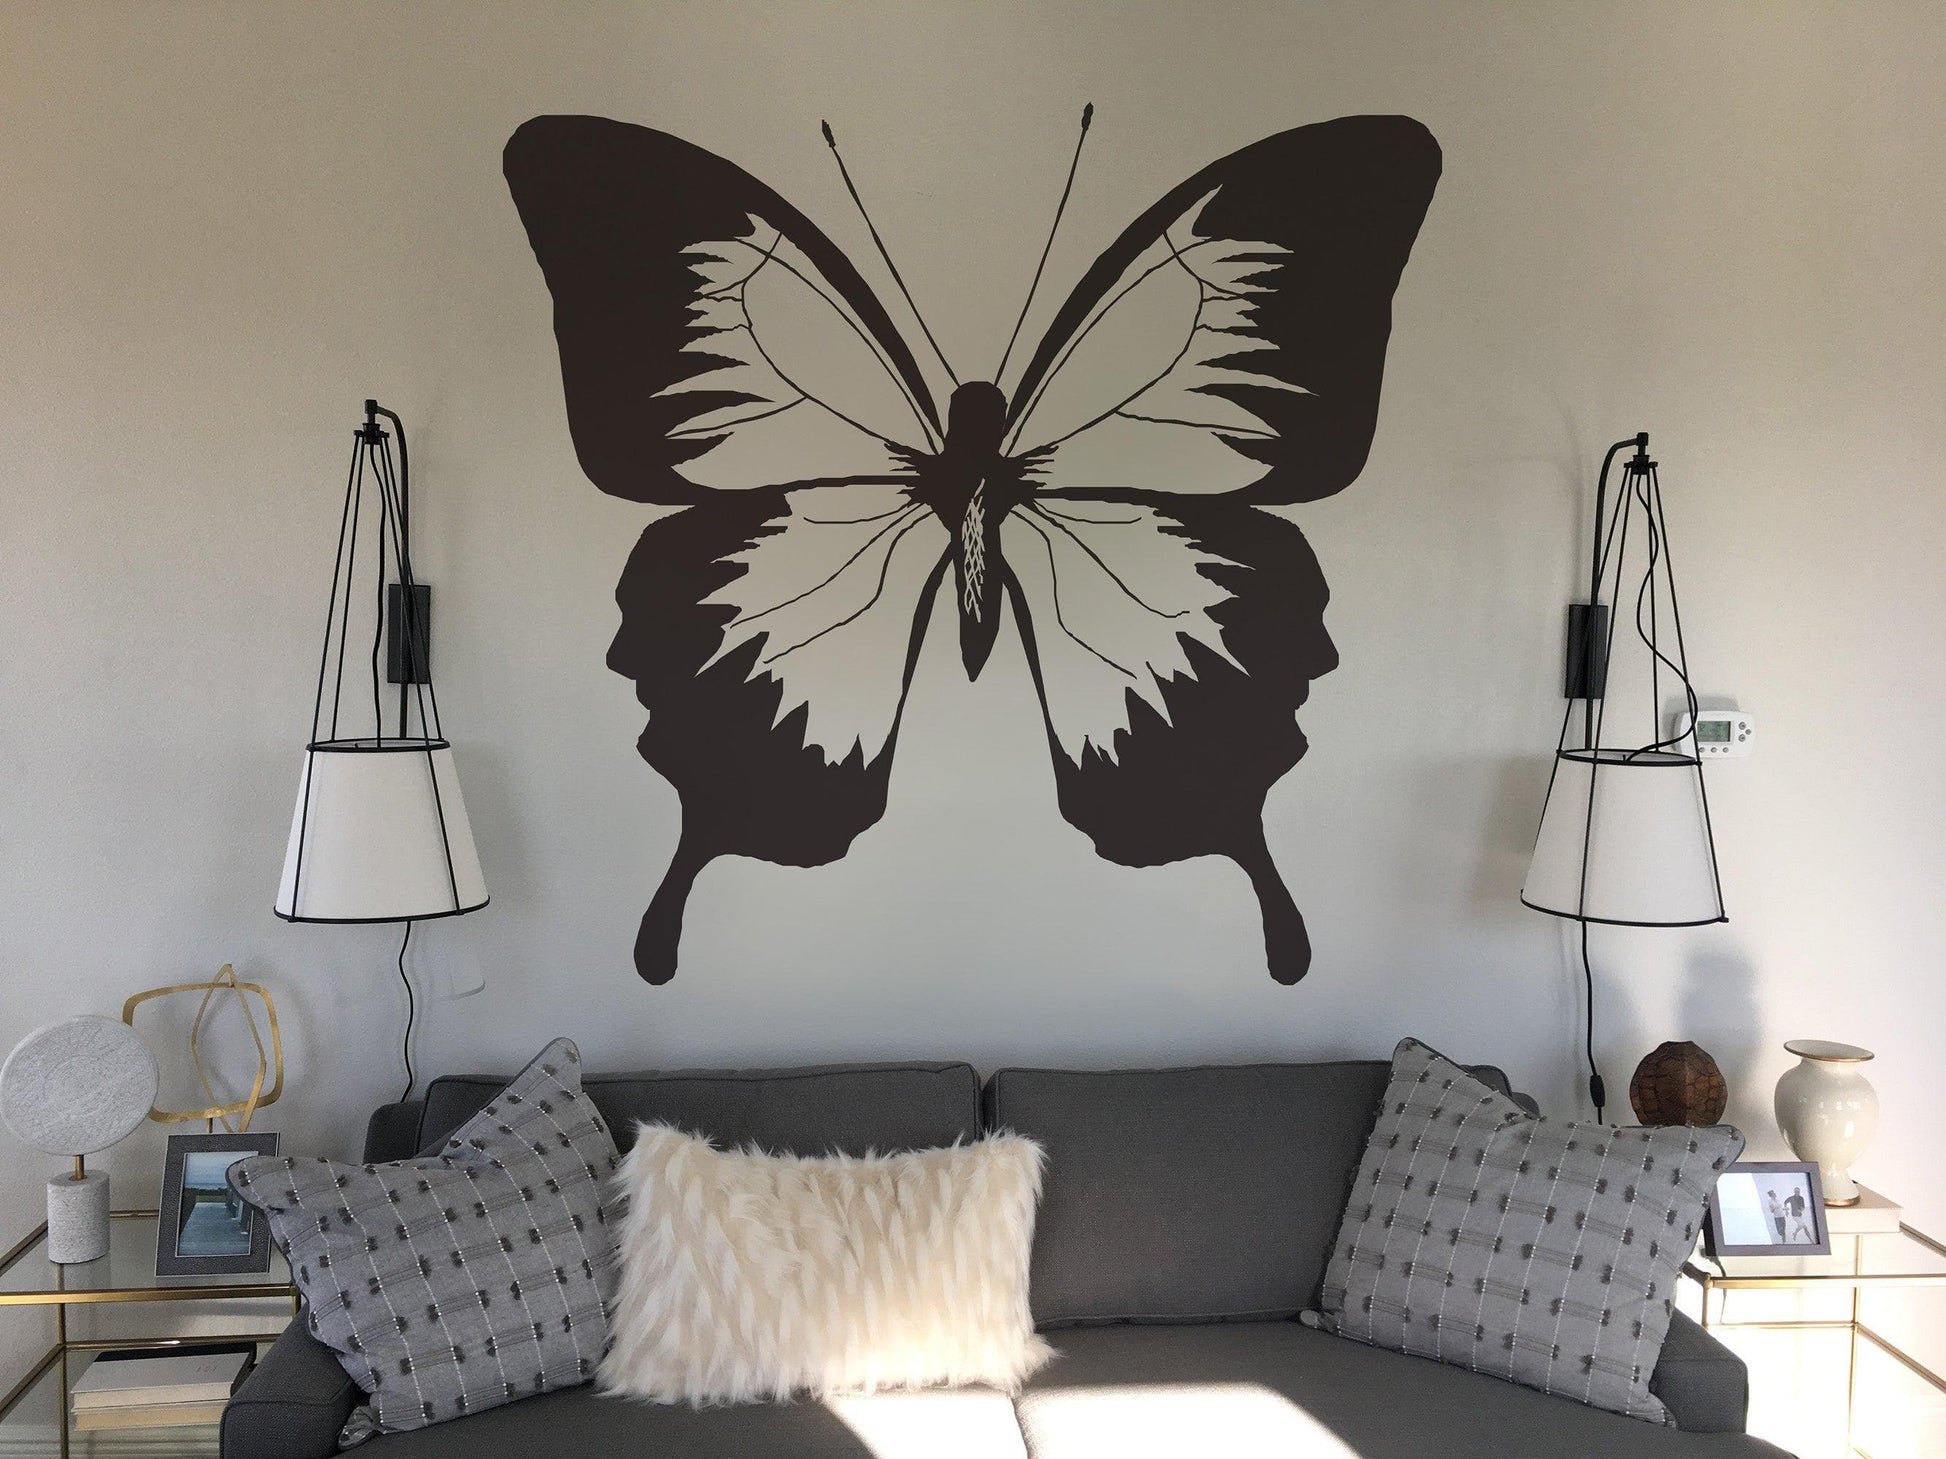 Set of 30 Butterflies Vinyl Wall Art Decals - 5 x 5 - Bedroom Vinyl –  Imprinted Designs